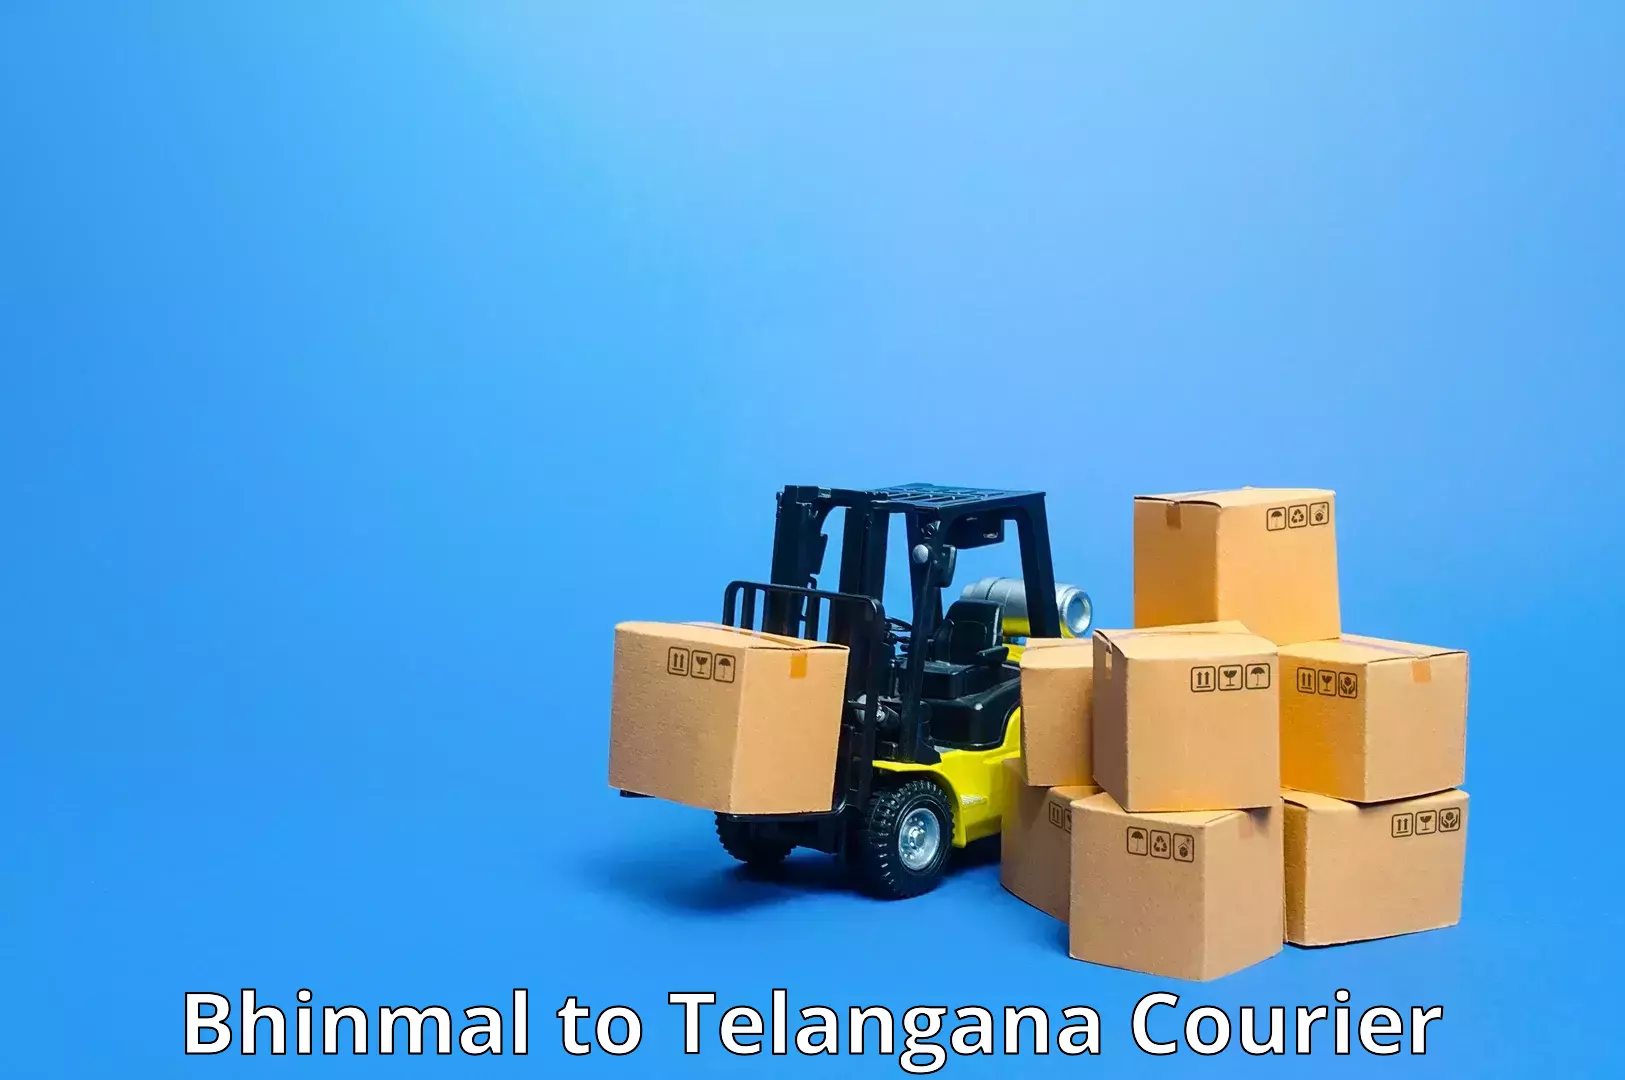 Versatile courier offerings in Bhinmal to Karimnagar